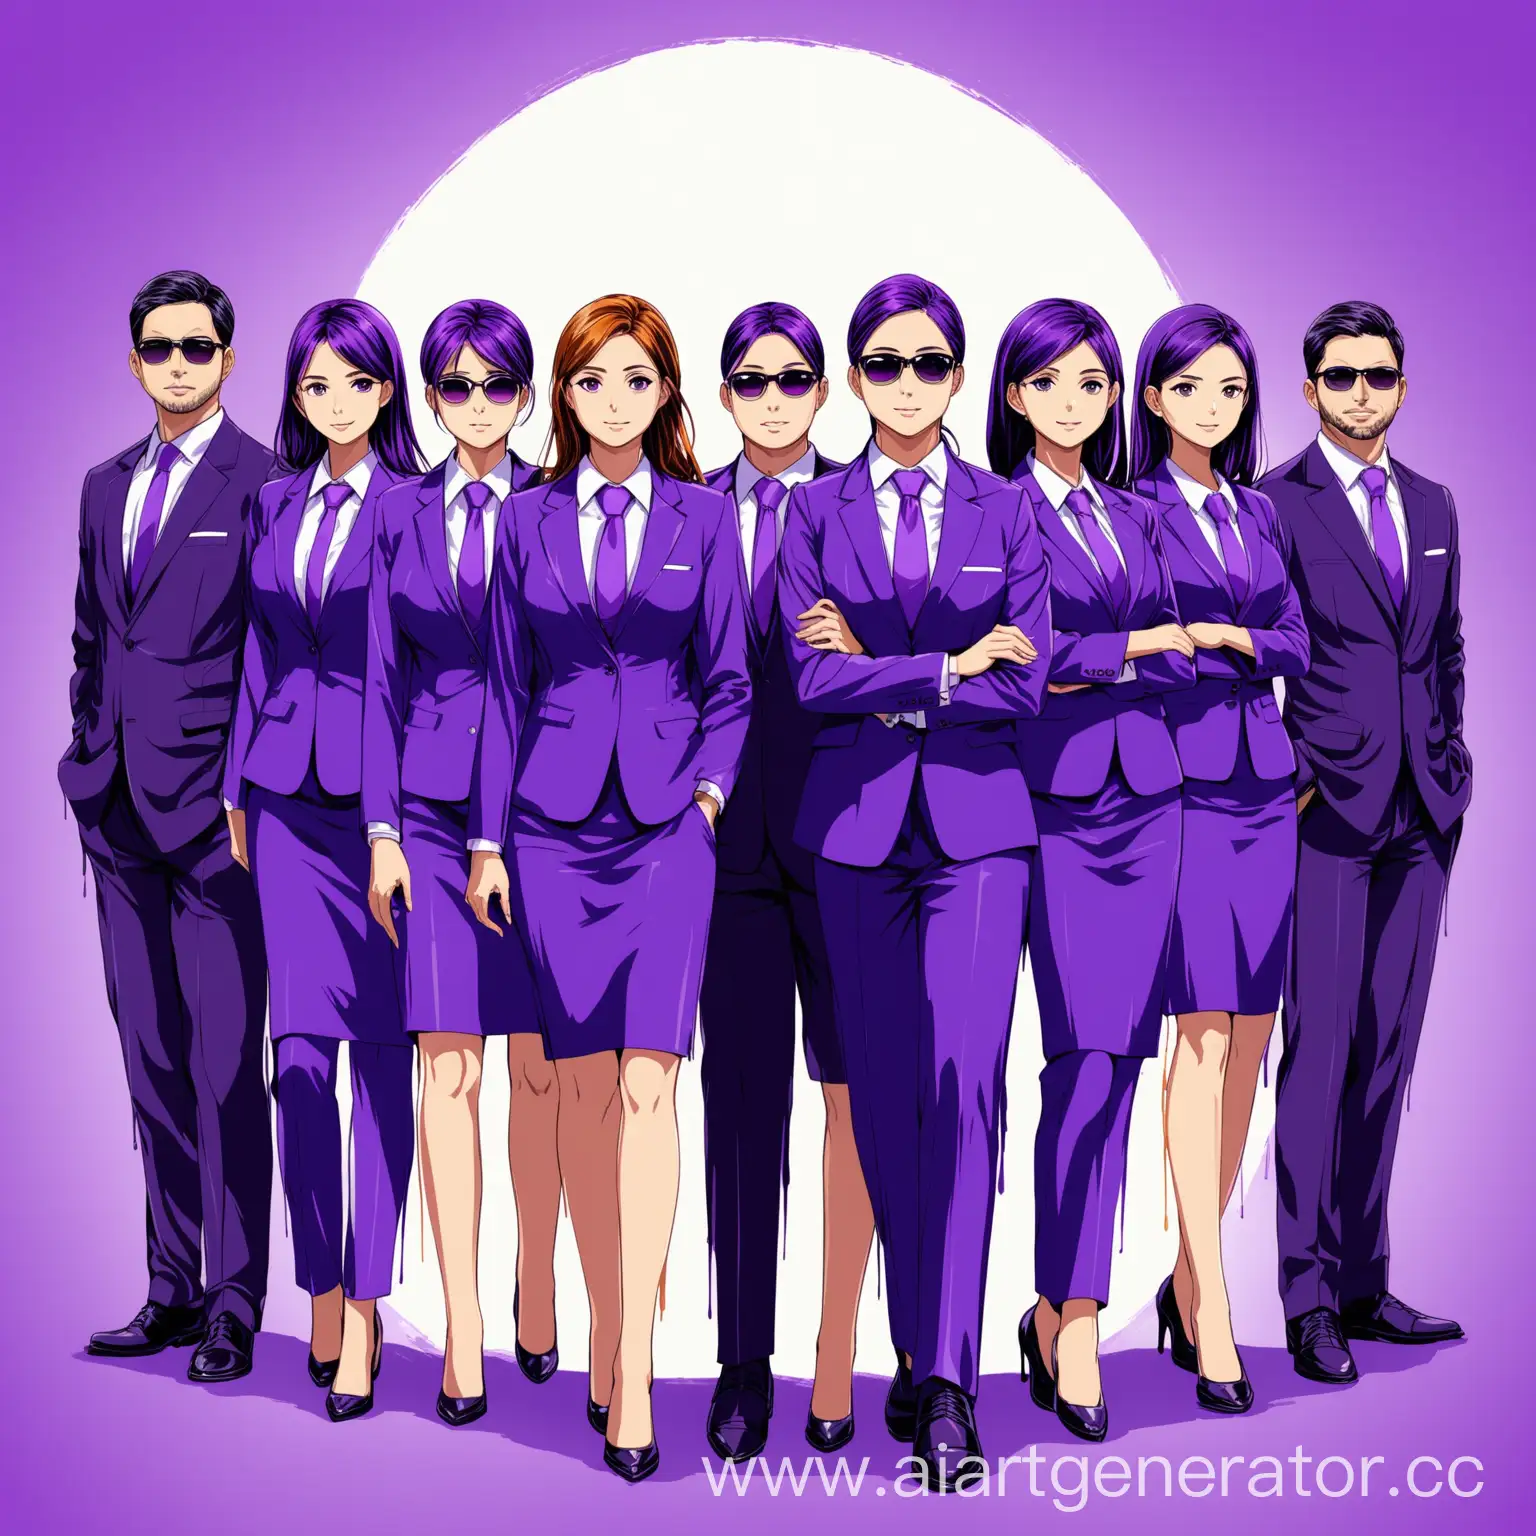 Нарисованный красками яркий и эмоциональный постер с приглашением на внутреннюю конференцию в сфере управления персоналом. Текст не нужен. На постере изображены 3 мужчины и 4 женщины в деловых офисных костюмах. Используй фиолетовые оттенки.